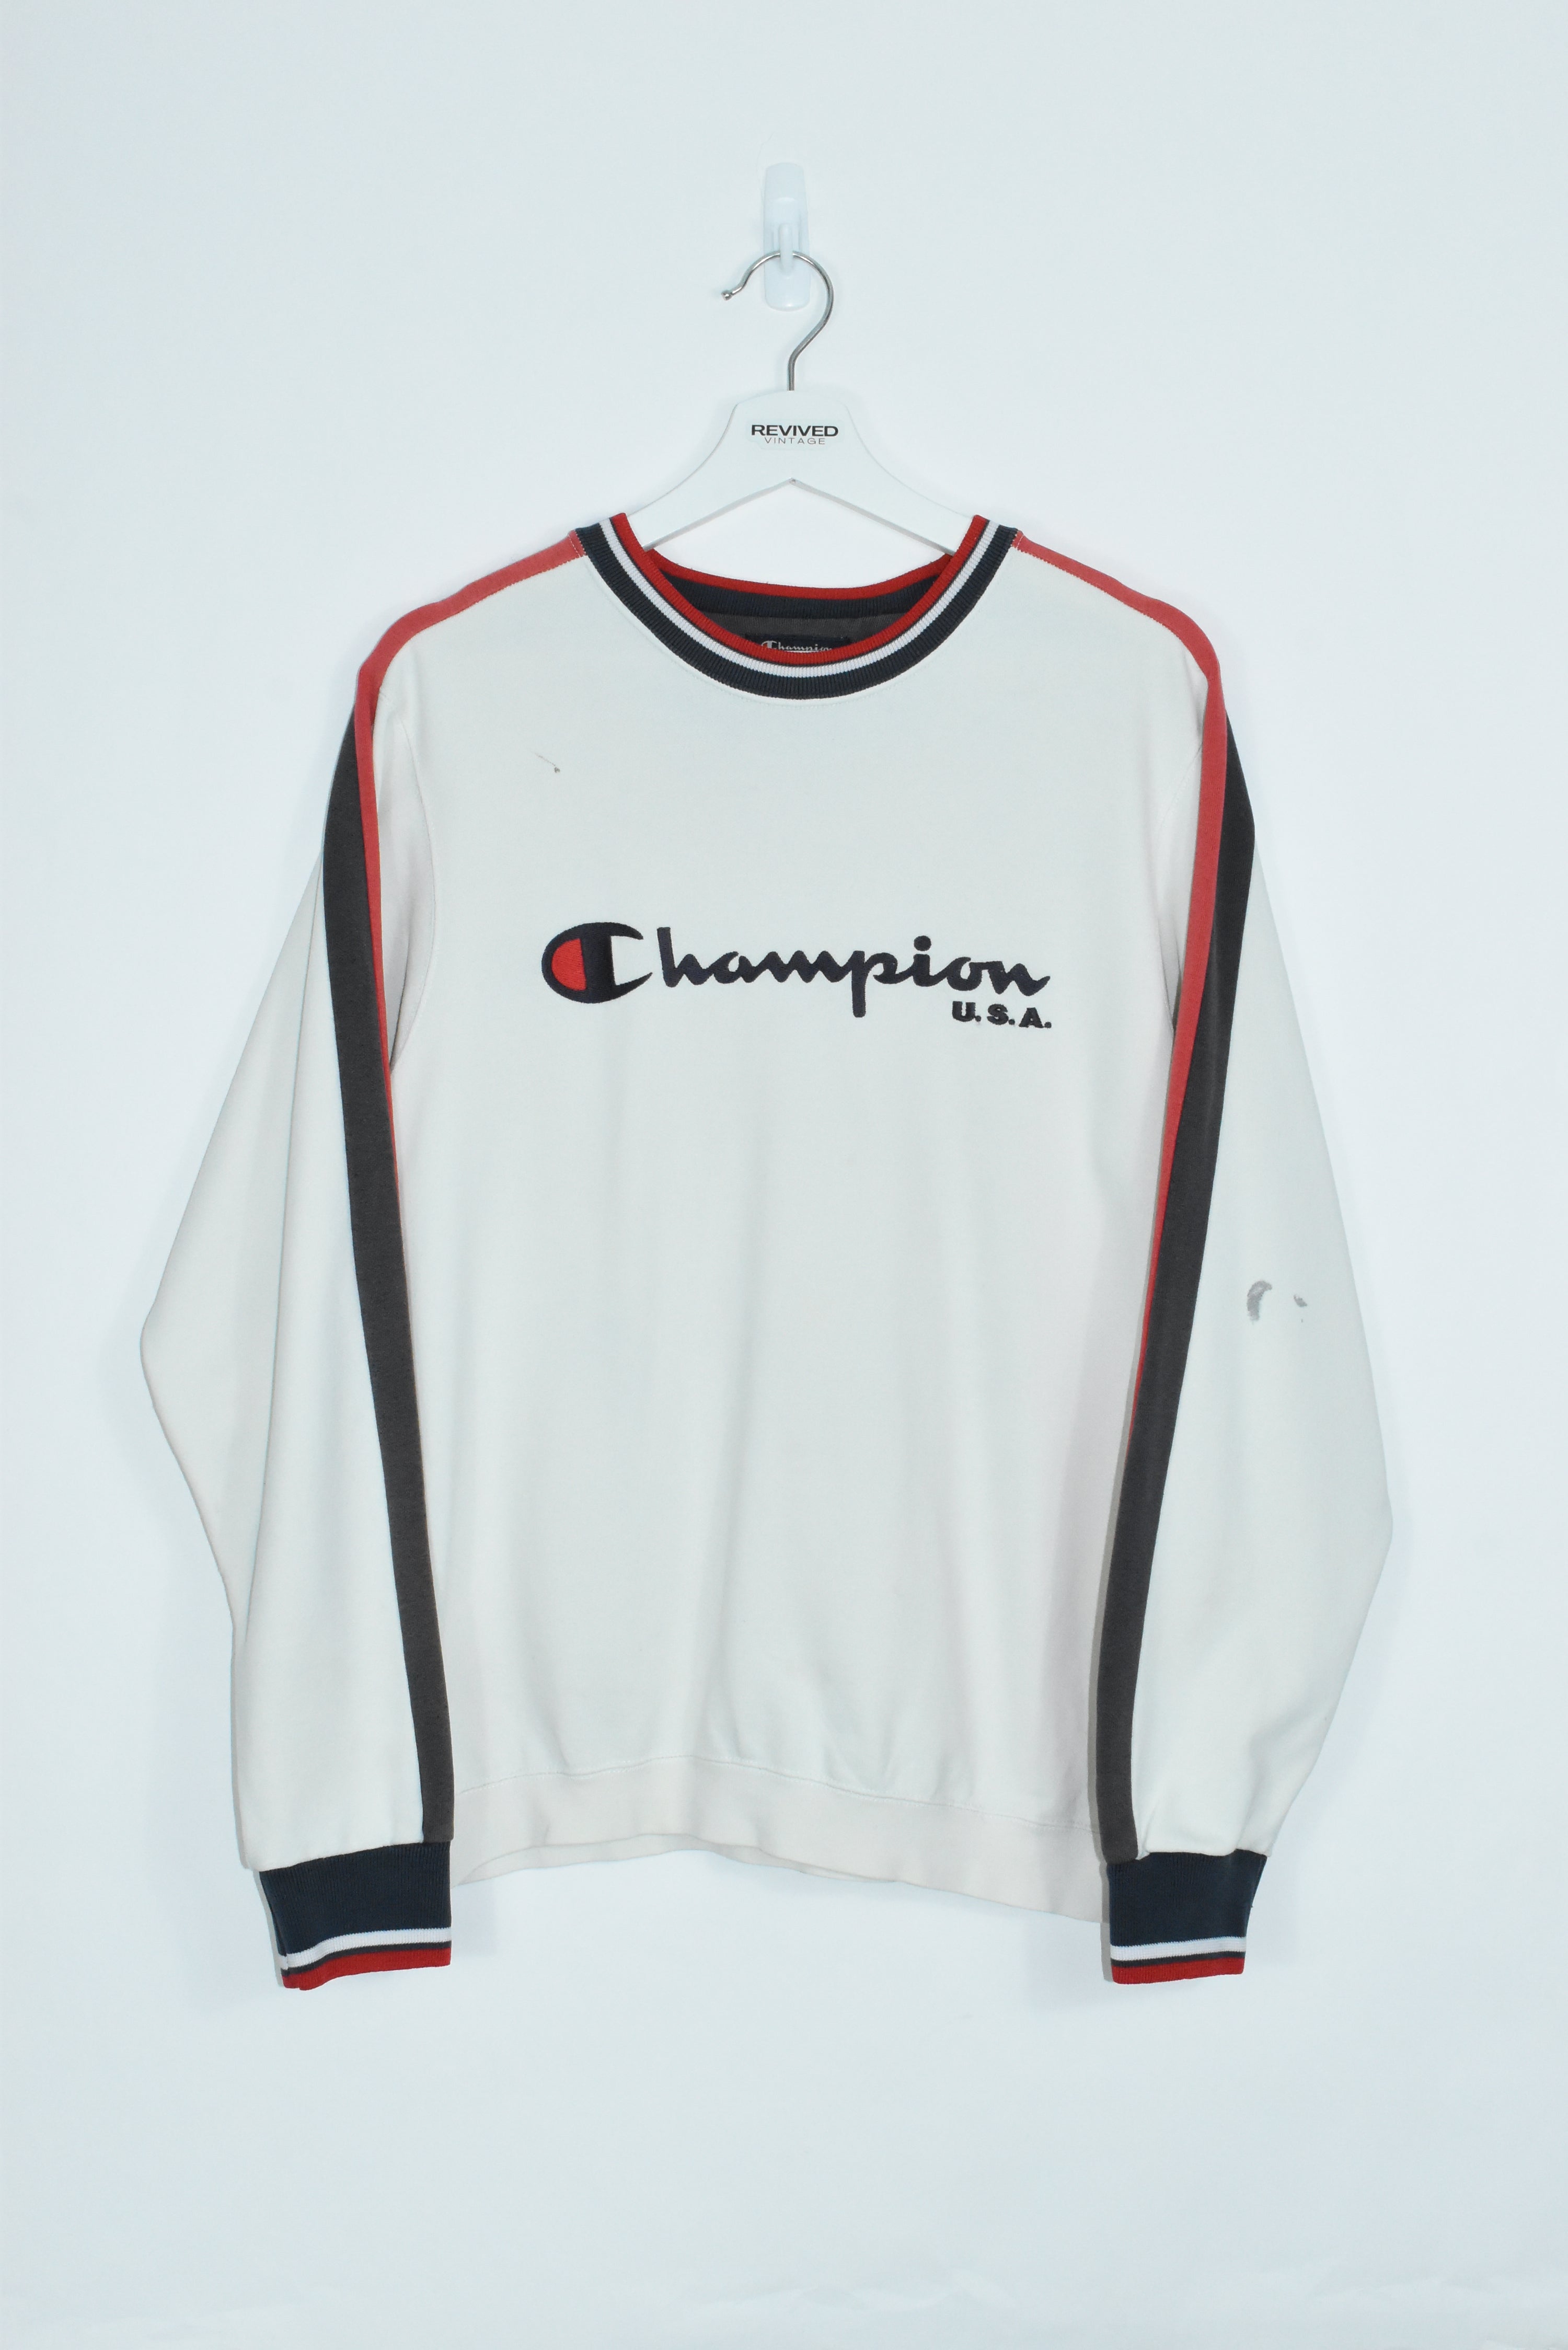 Vintage Champion Embroidery Sweatshirt Medium